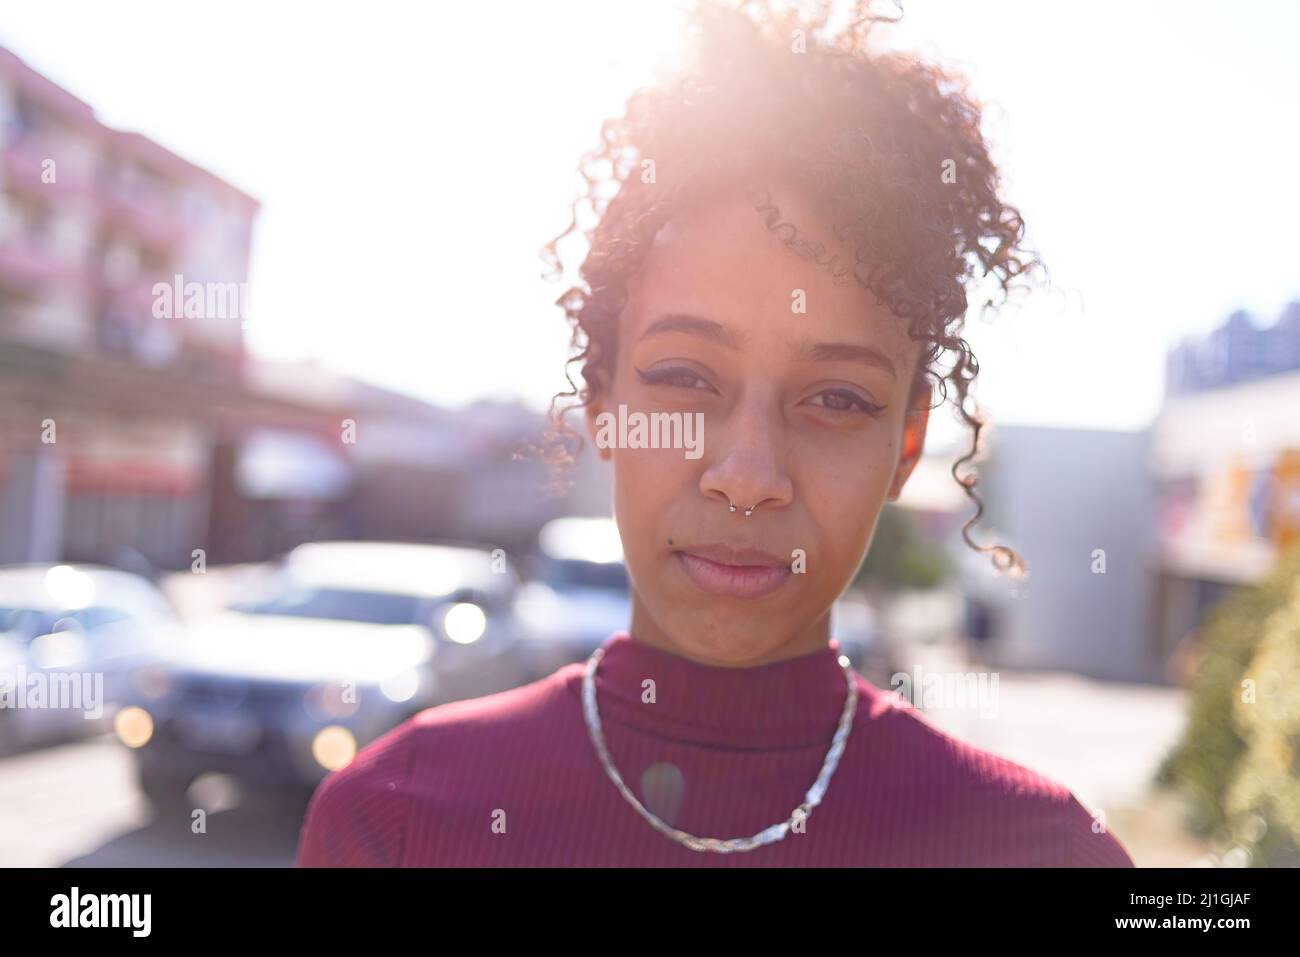 Jeune femme noire portrait à l'extérieur en milieu urbain Banque D'Images